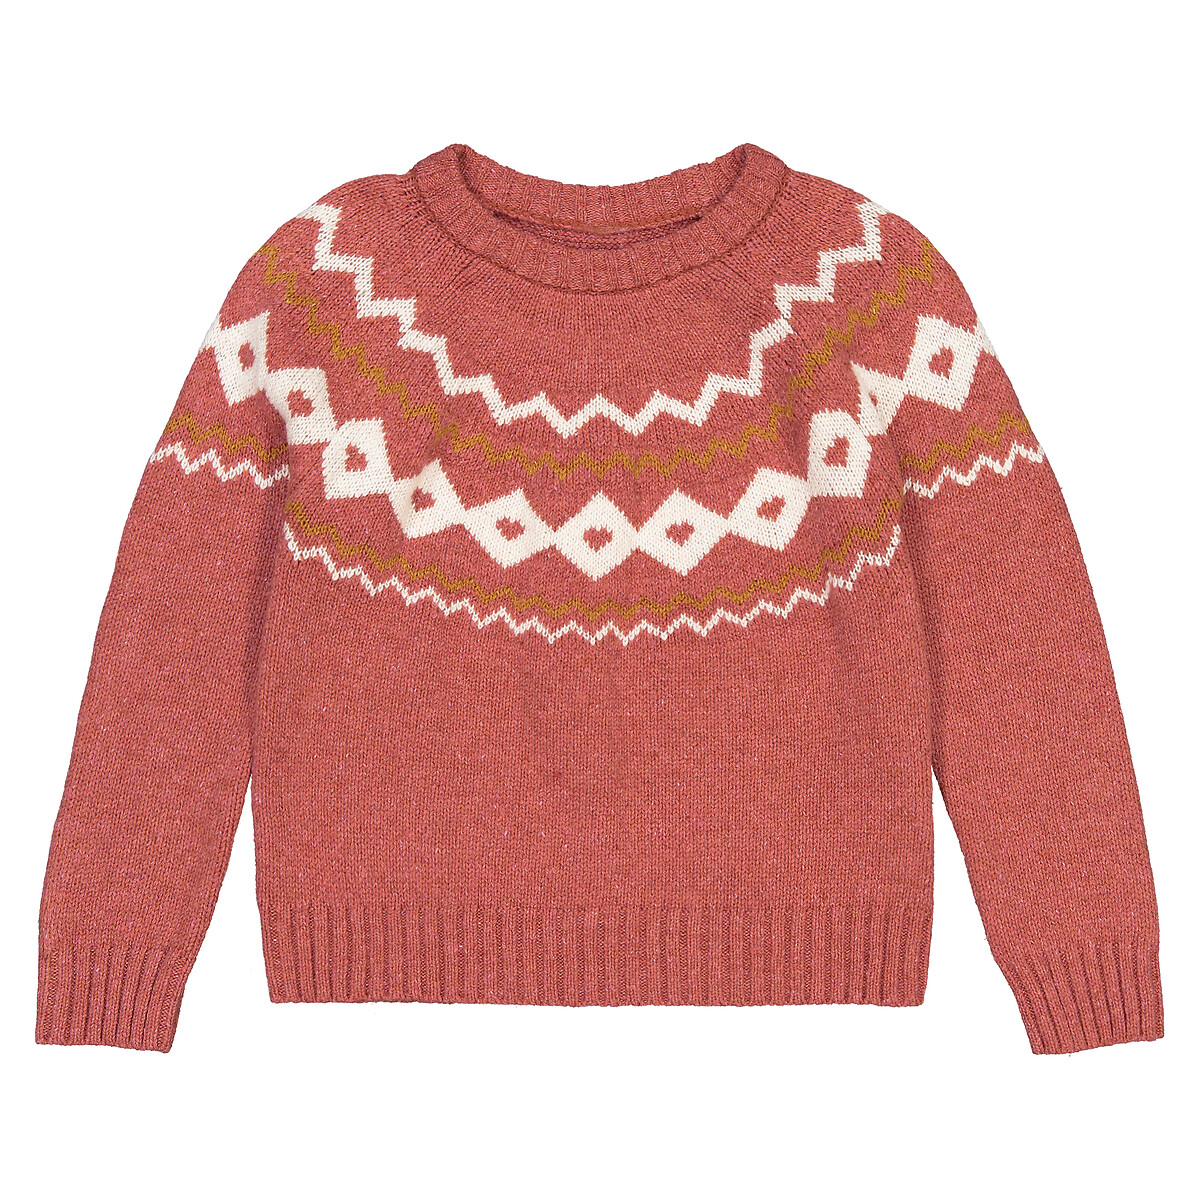 Пуловер LaRedoute С круглым вырезом из тонкого трикотажа жаккард 3-12 лет 3 года - 94 см розовый, размер 3 года - 94 см - фото 3